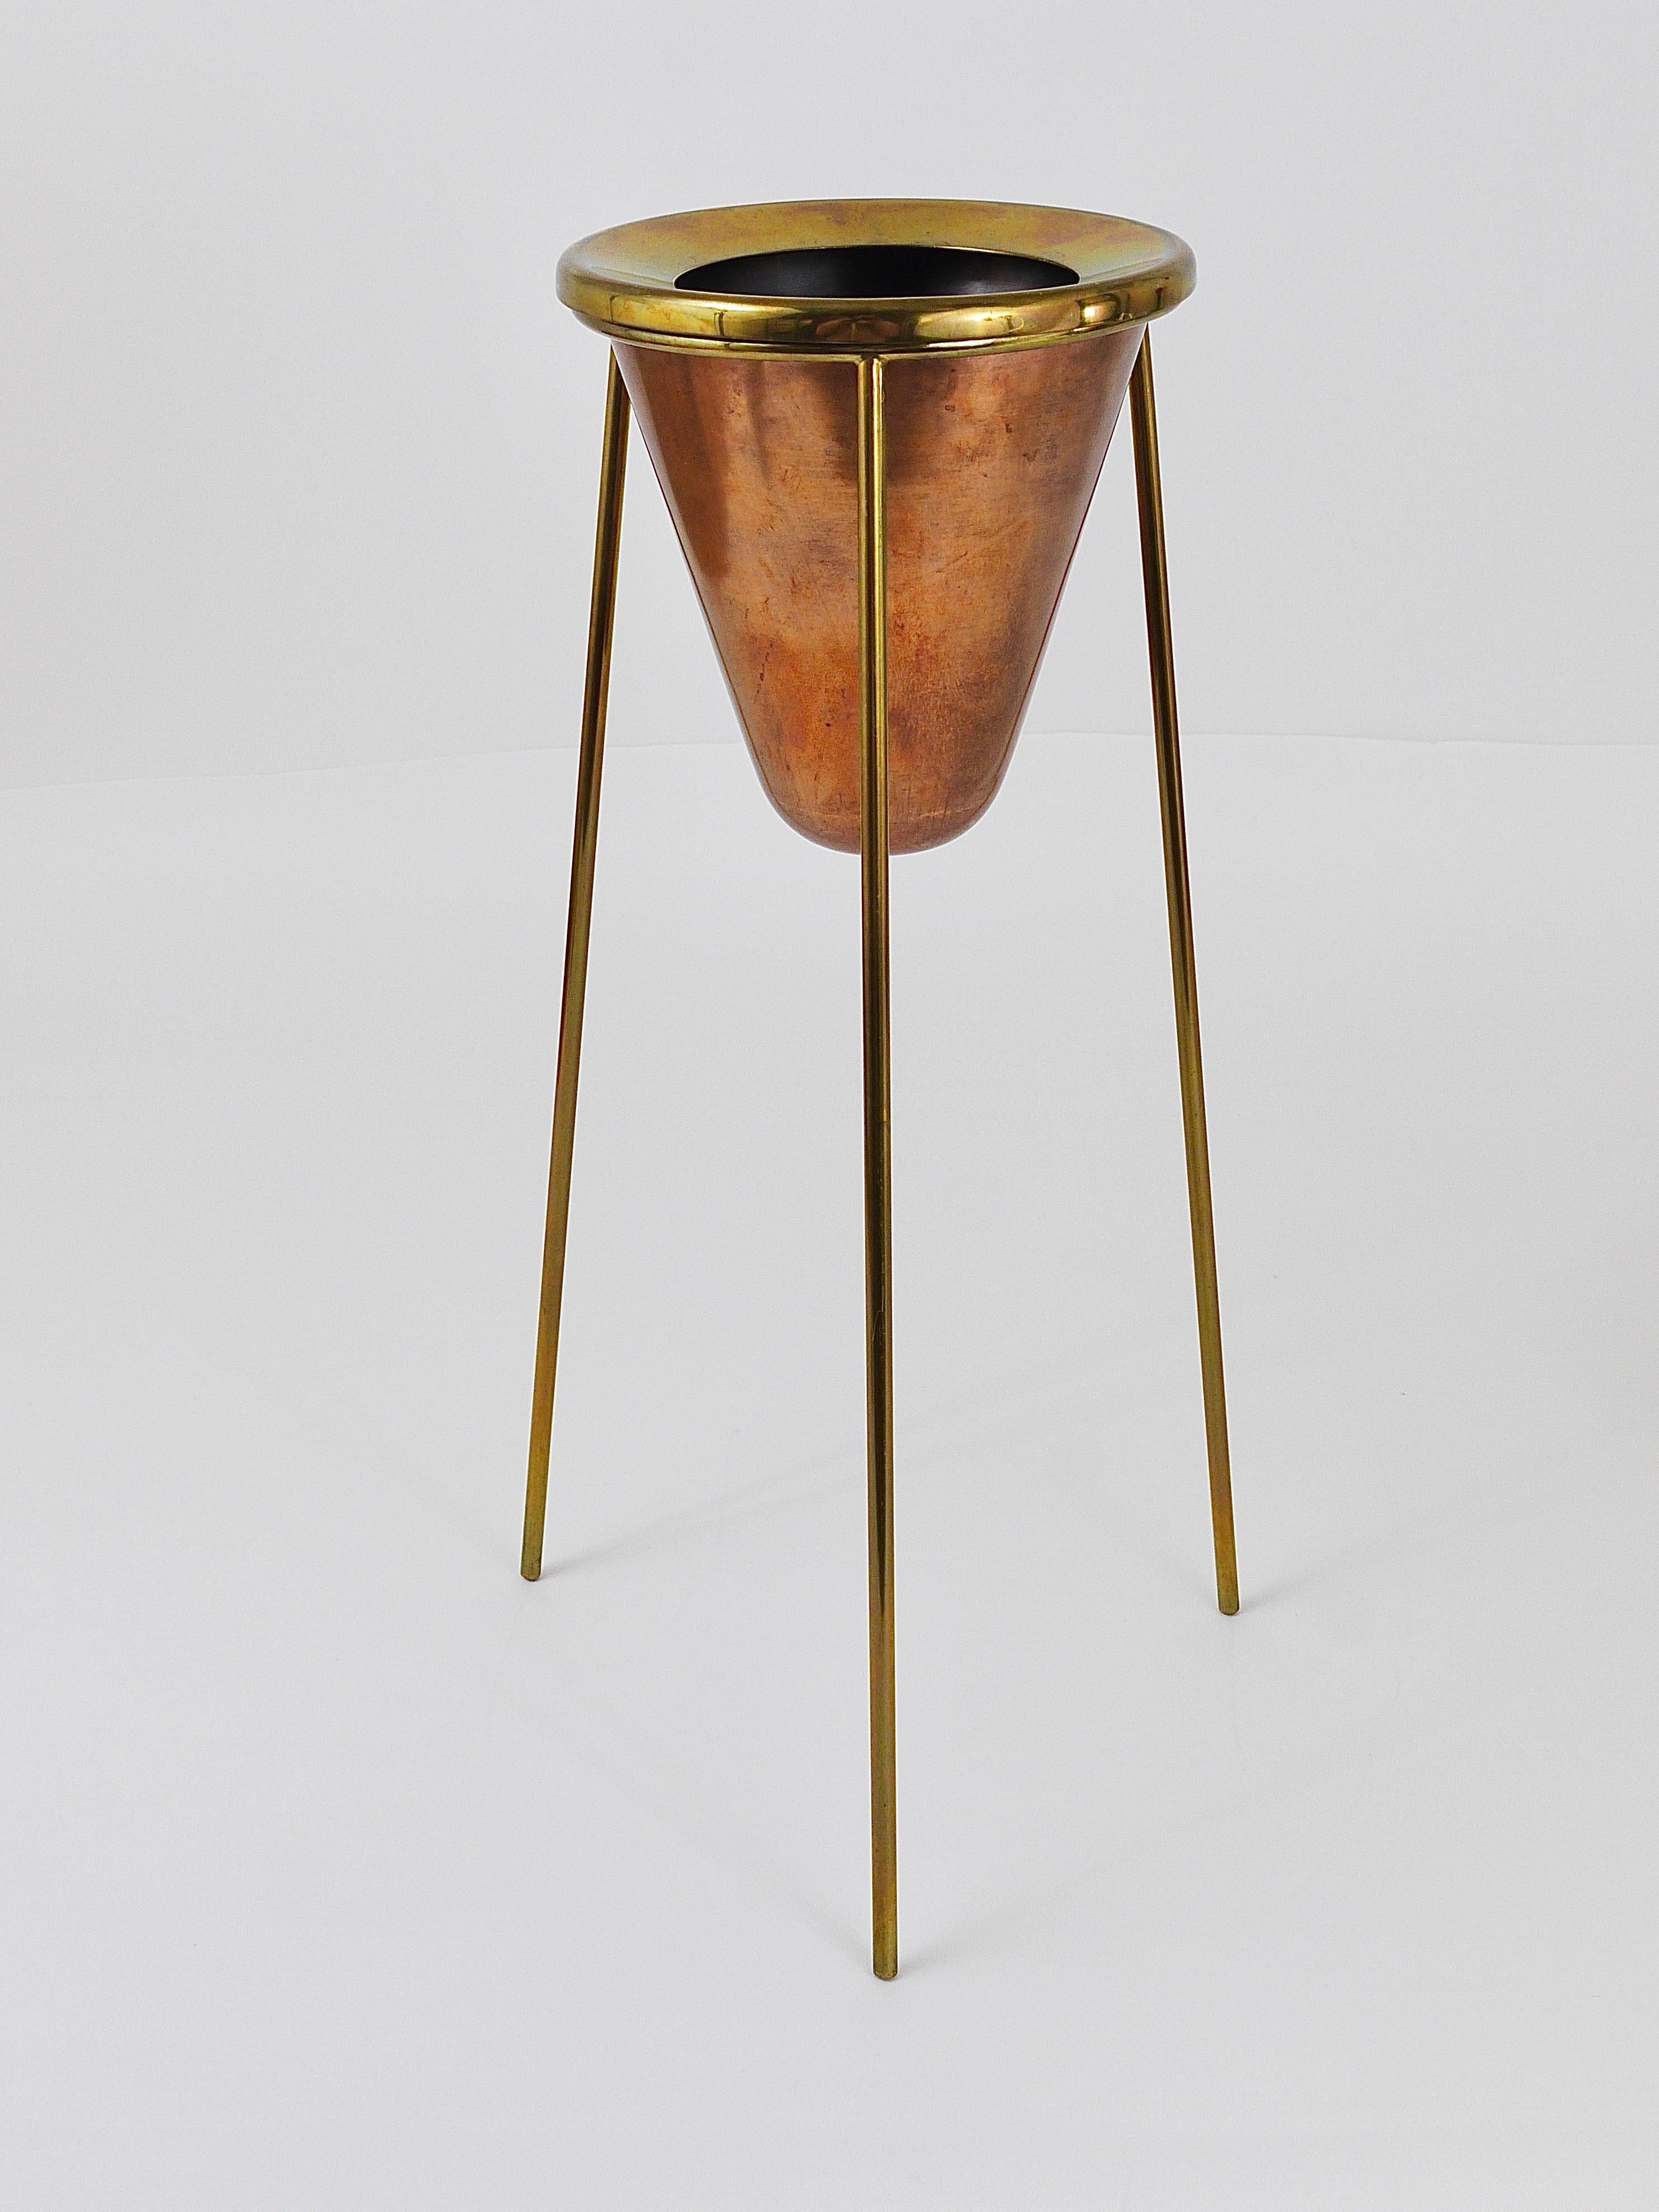 Rare Carl Aubock Copper & Brass Tripod Floor Ashtray, Austria, 1950s For Sale 2